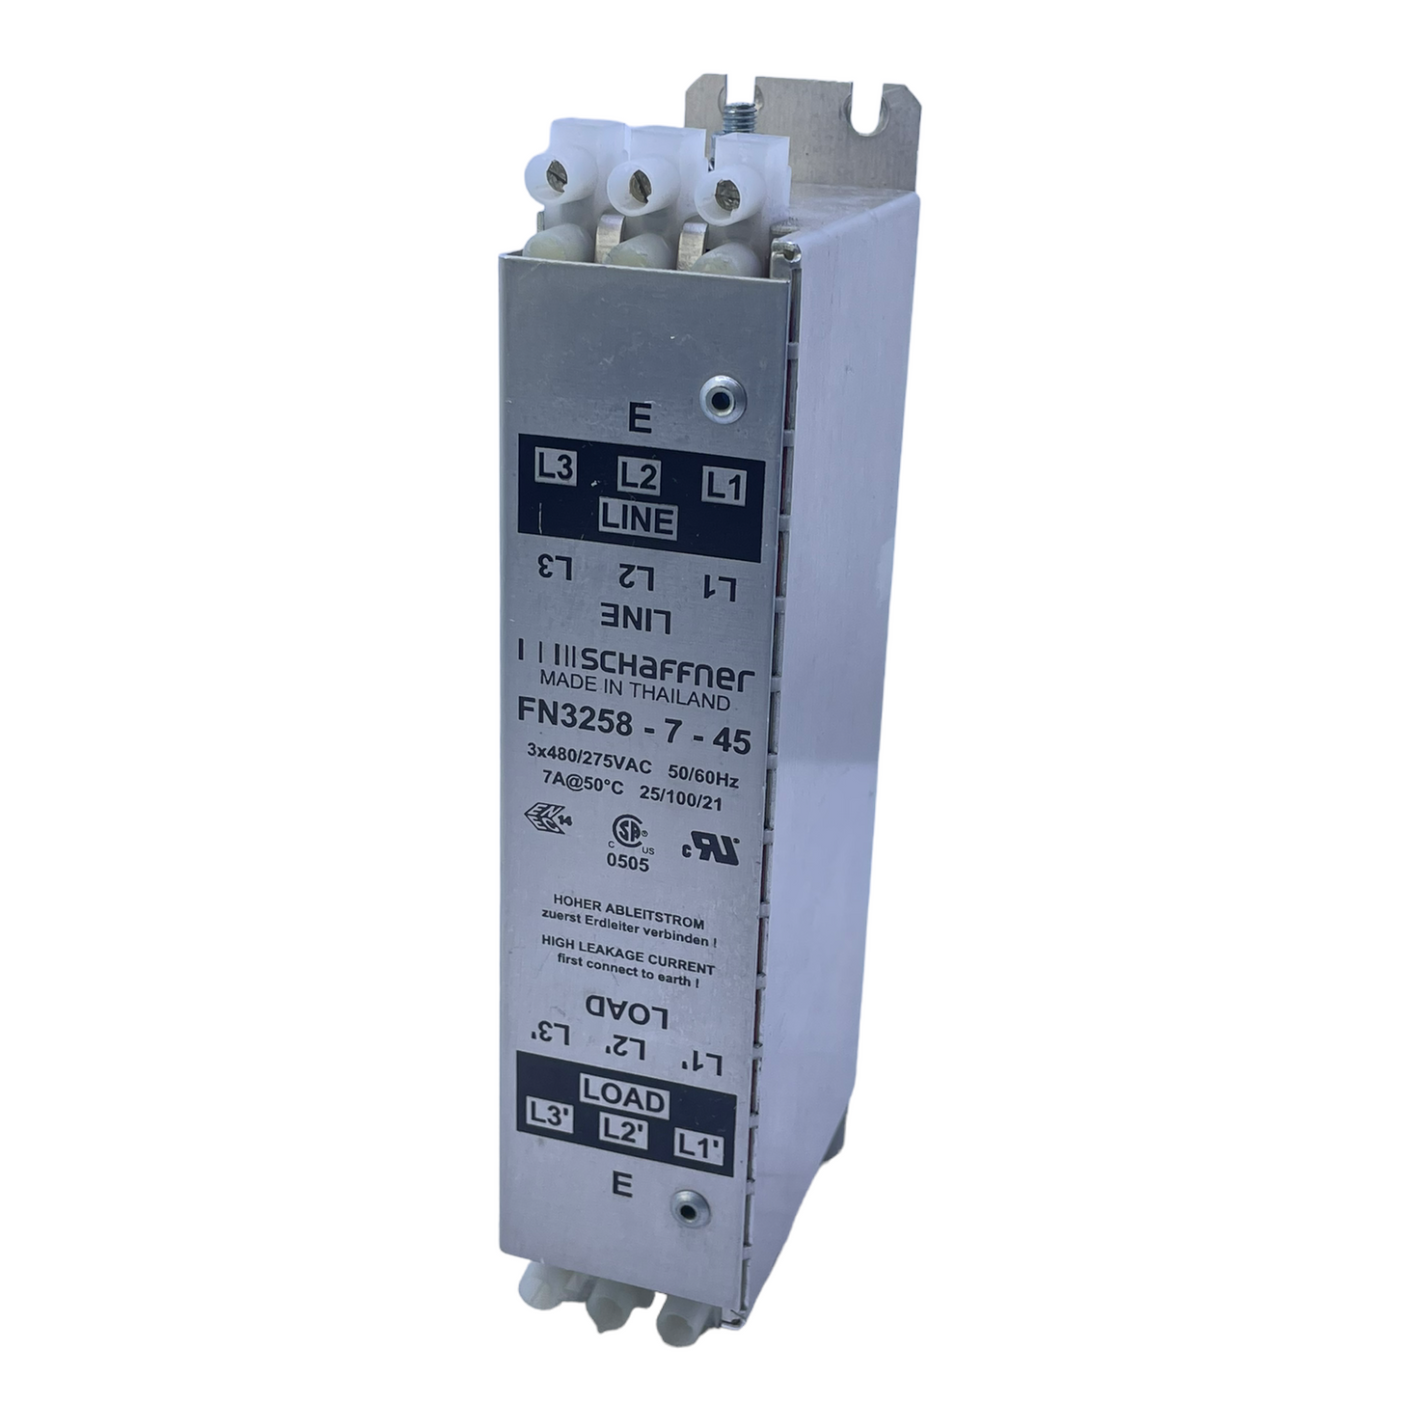 Schaffner FN3258-7-45 Stromleitungsfilter für industriellen Einsatz 3x480/275VAC